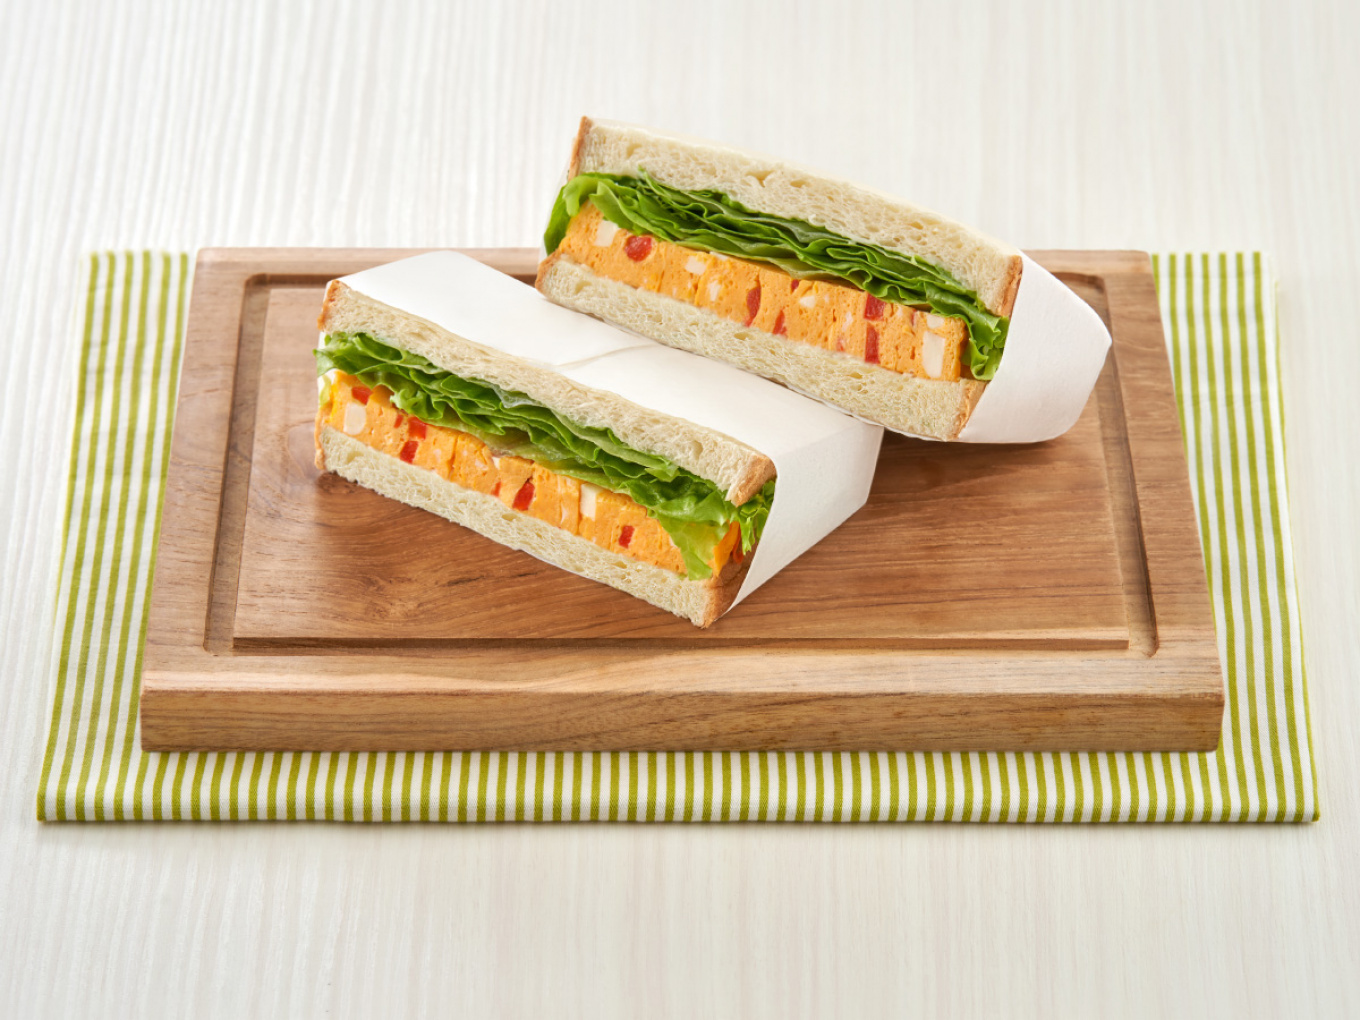 Japanese Omelette Sandwich